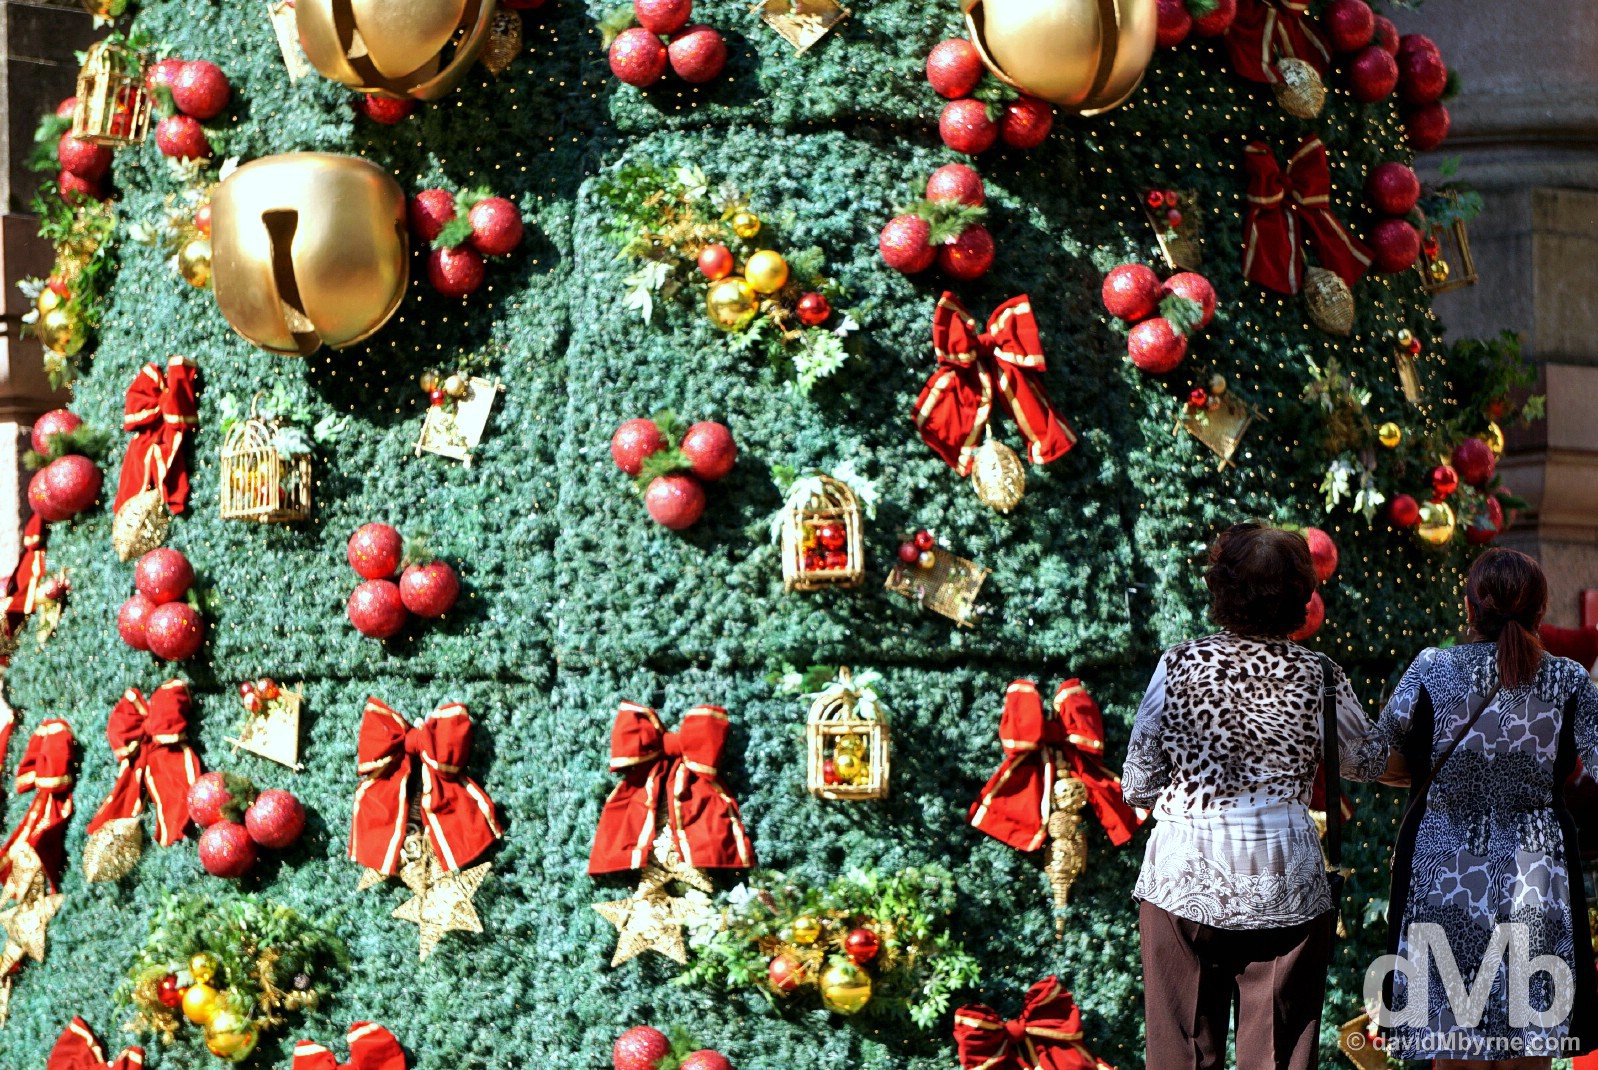 Christmas in Alfandega Square, Porto Alegre, Rio Grande do Sul, Brazil. December 8, 2015.